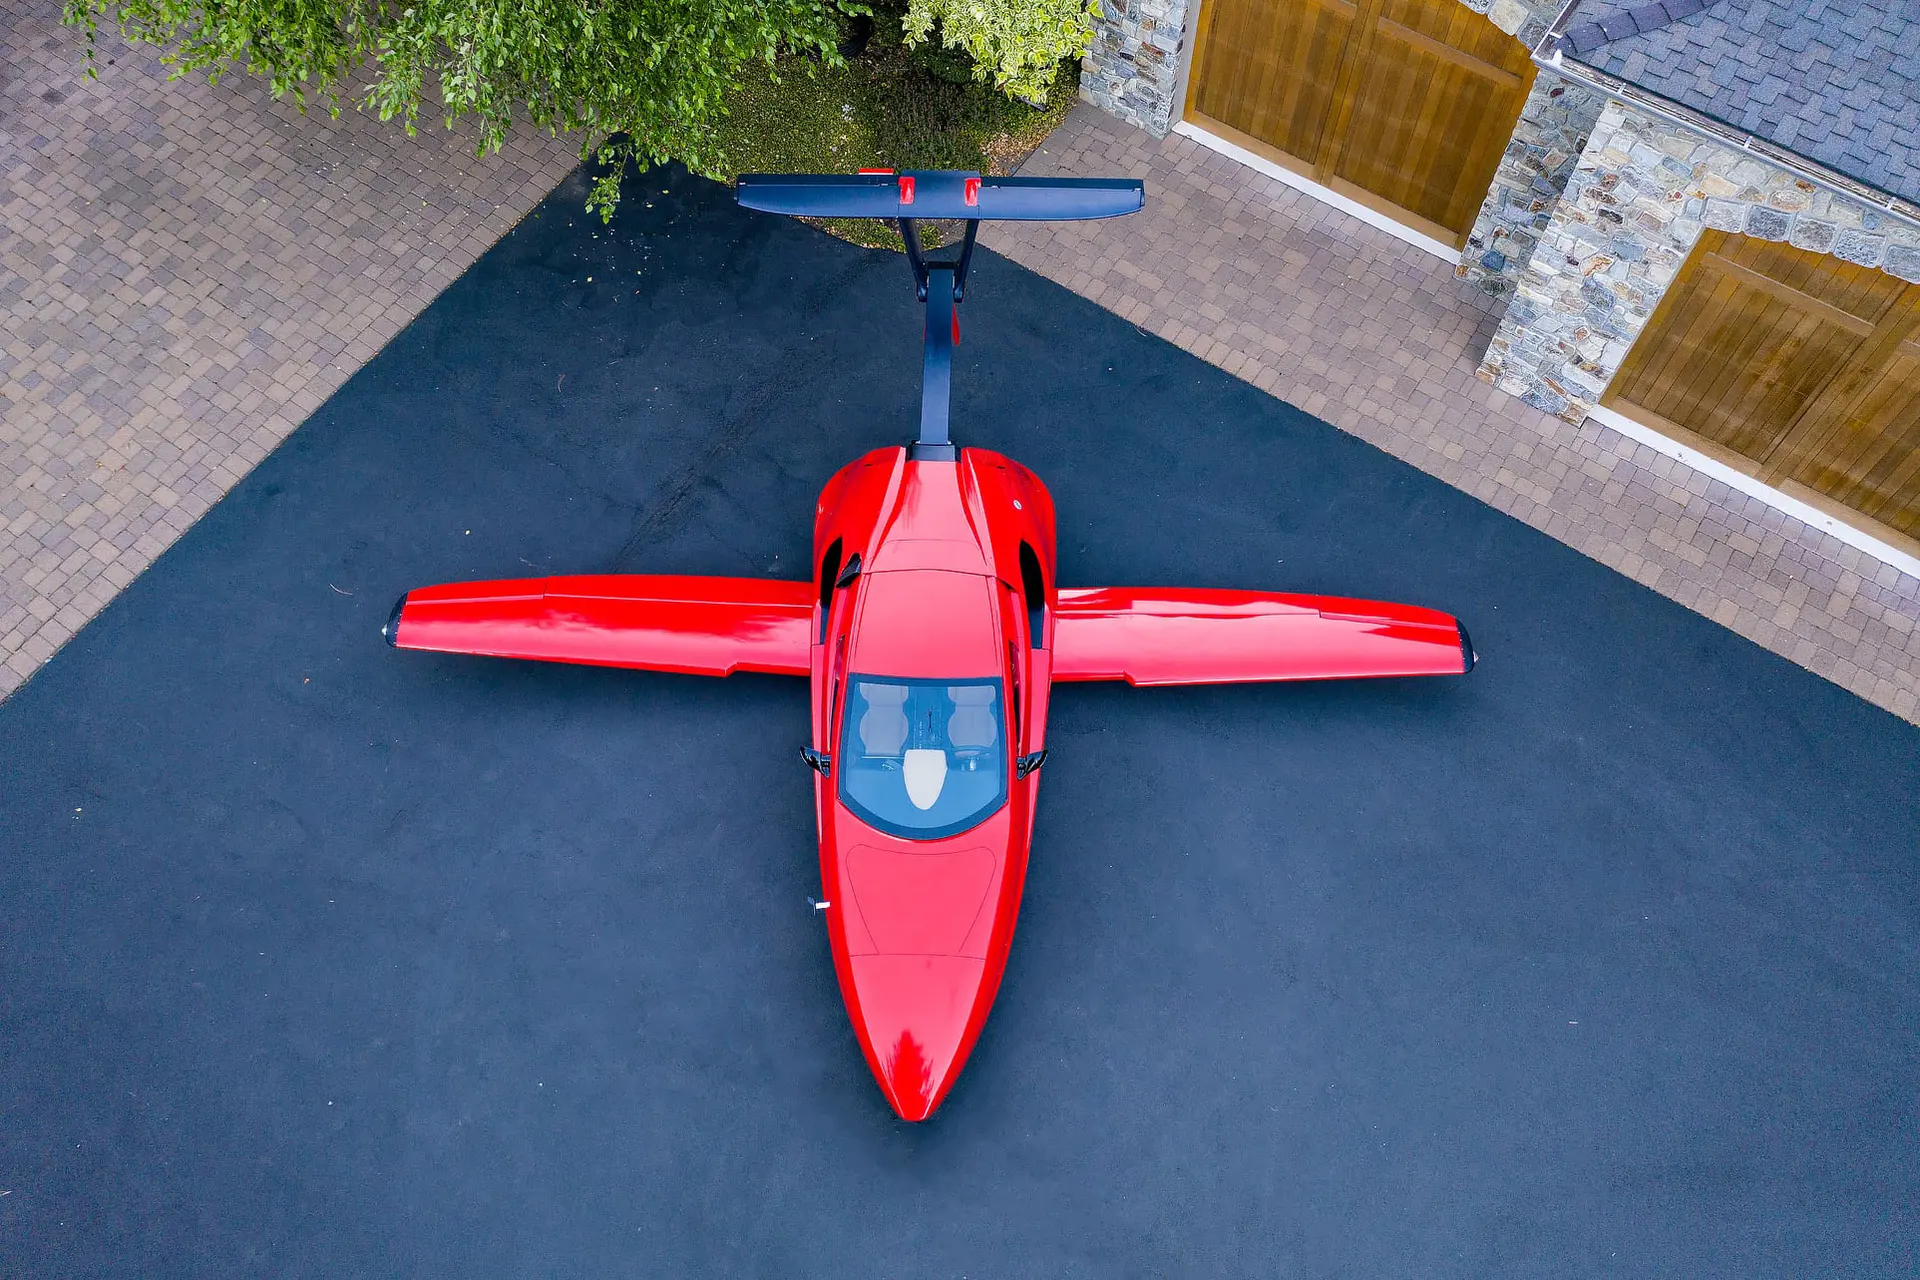 Samson Sky Switchblade to niezwykły samochód za 150 000 dolarów, który w ciągu kilku sekund zamienia się w samolot i może osiągnąć prędkość 257 km/h